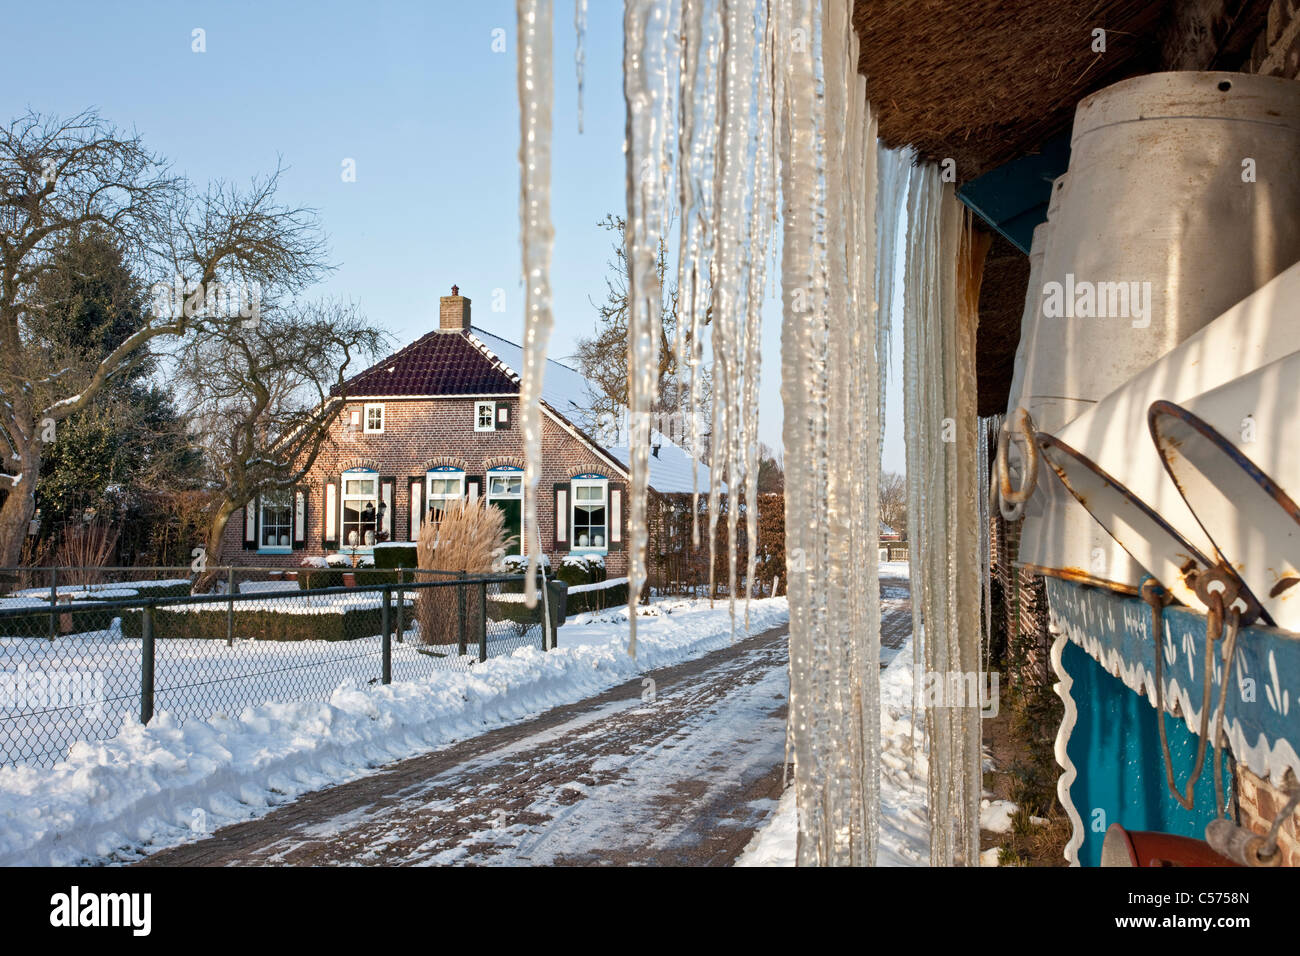 Niederlande, Staphorst, Winter, Eiszapfen auf Bauernhof Dach. Stockfoto